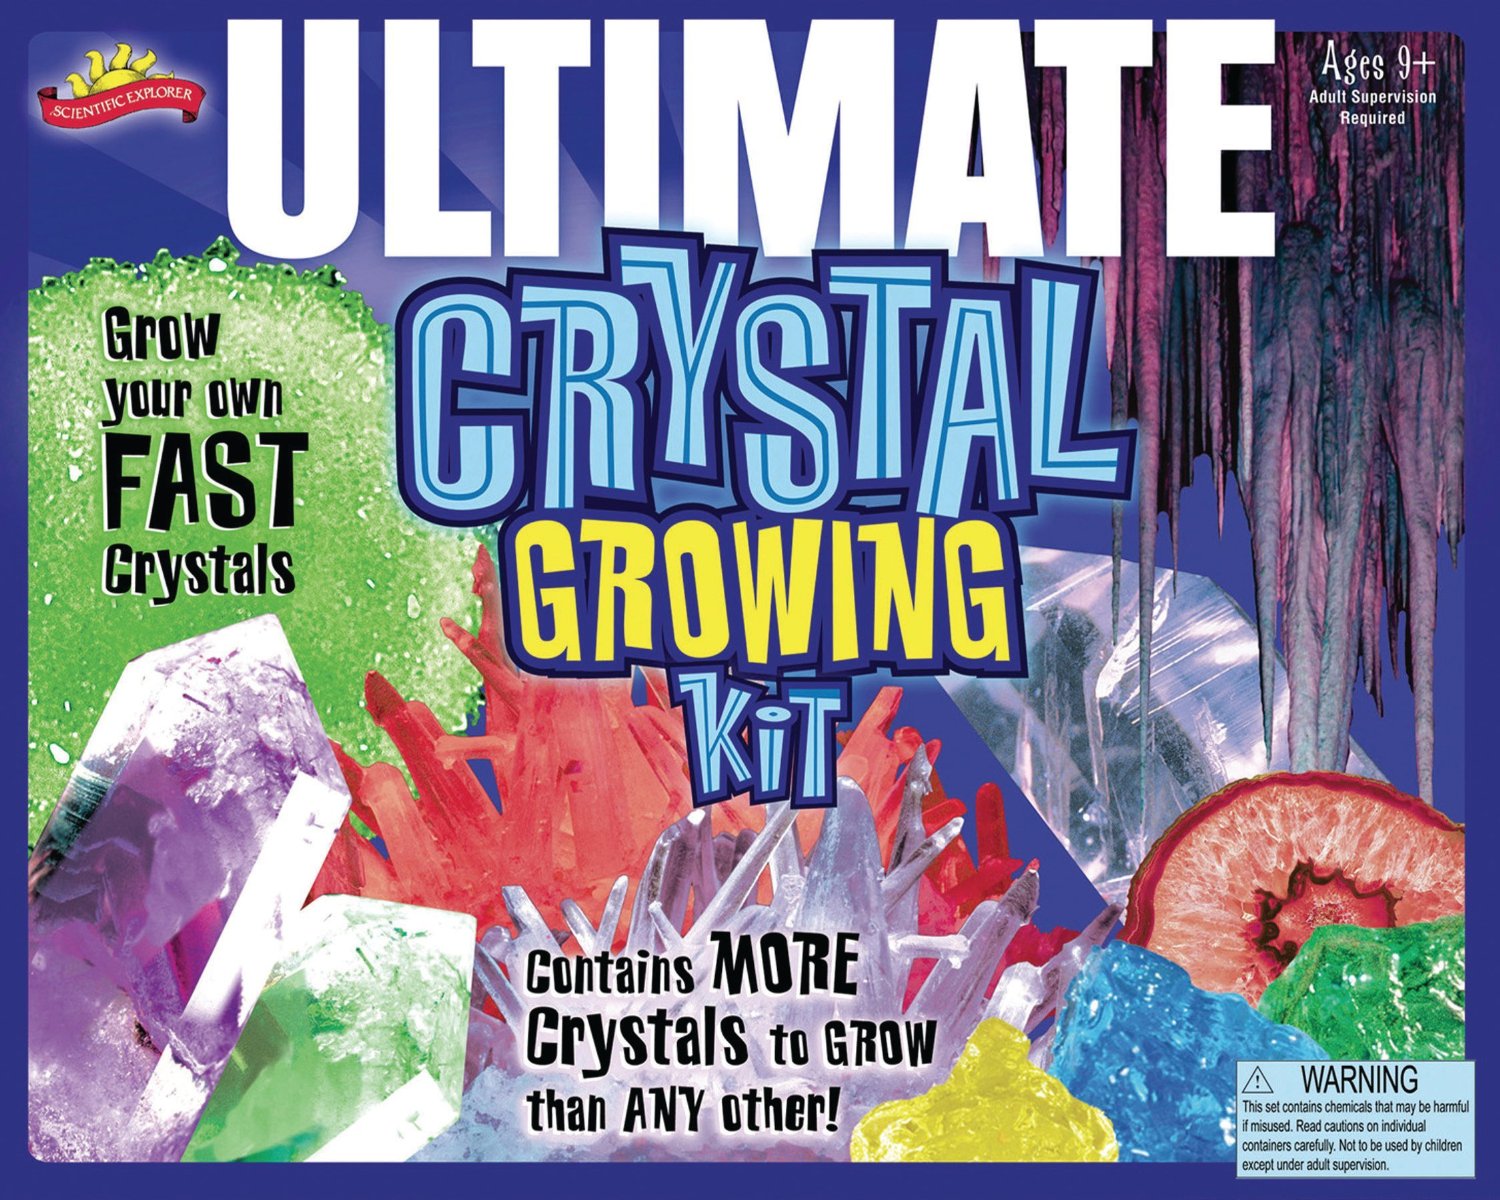 Ultimate Crystal Growing Kit